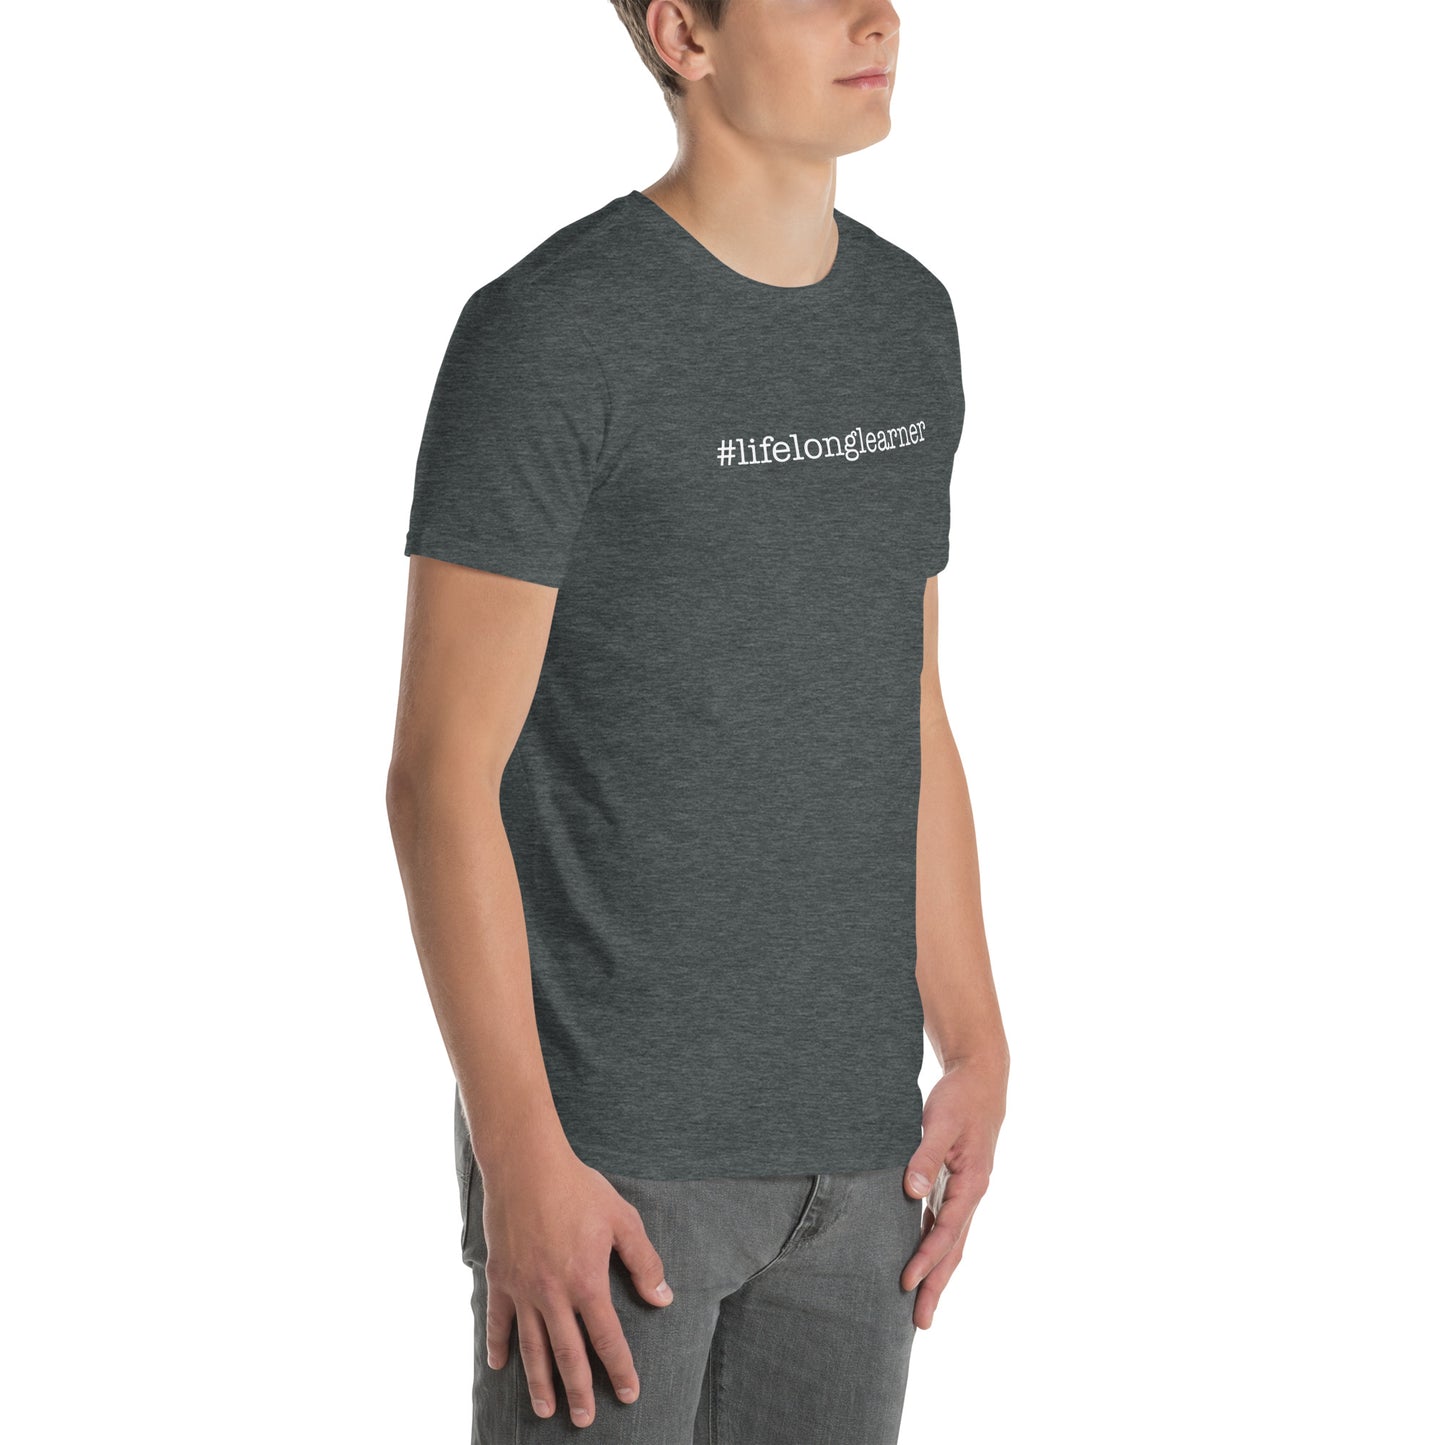 #LifeLongLearner Short-Sleeve Unisex T-Shirt